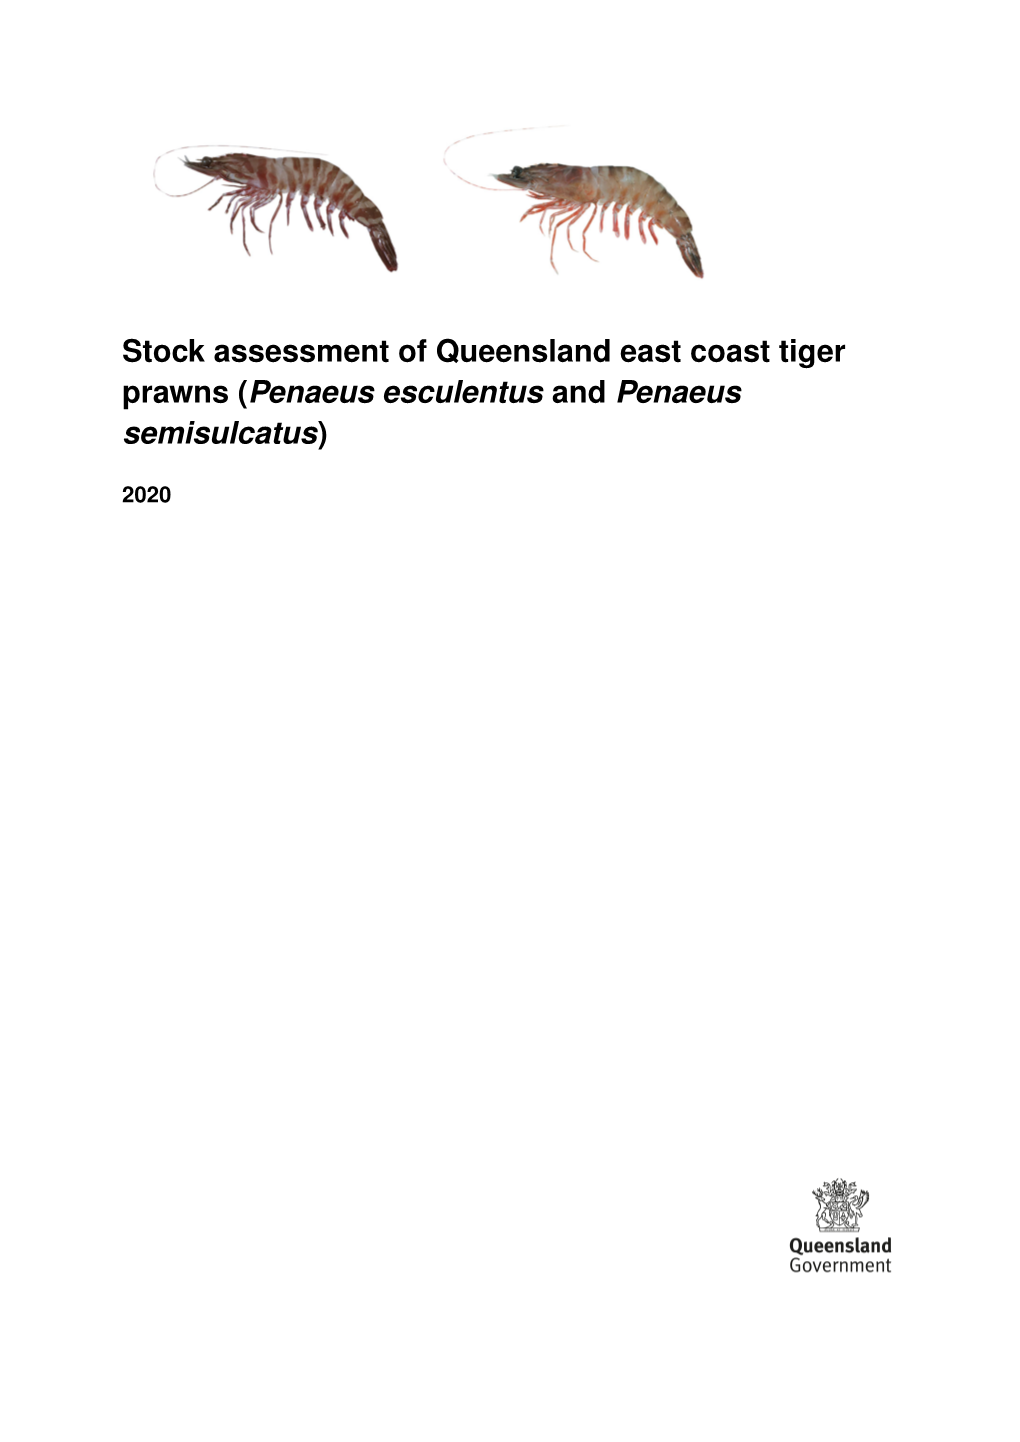 Stock Assessment of Queensland East Coast Tiger Prawns (Penaeus Esculentus and Penaeus Semisulcatus)